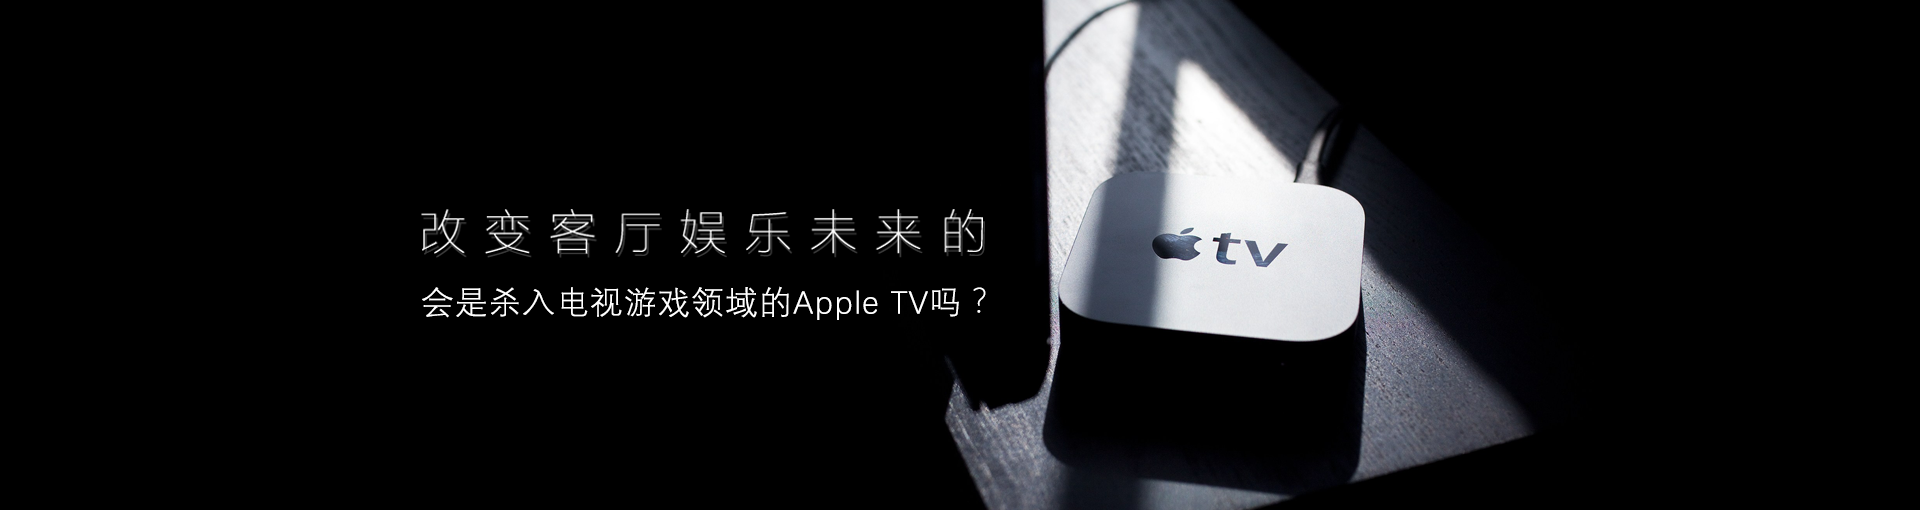 改变客厅娱乐未来的会是杀入电视游戏领域的Apple TV吗？